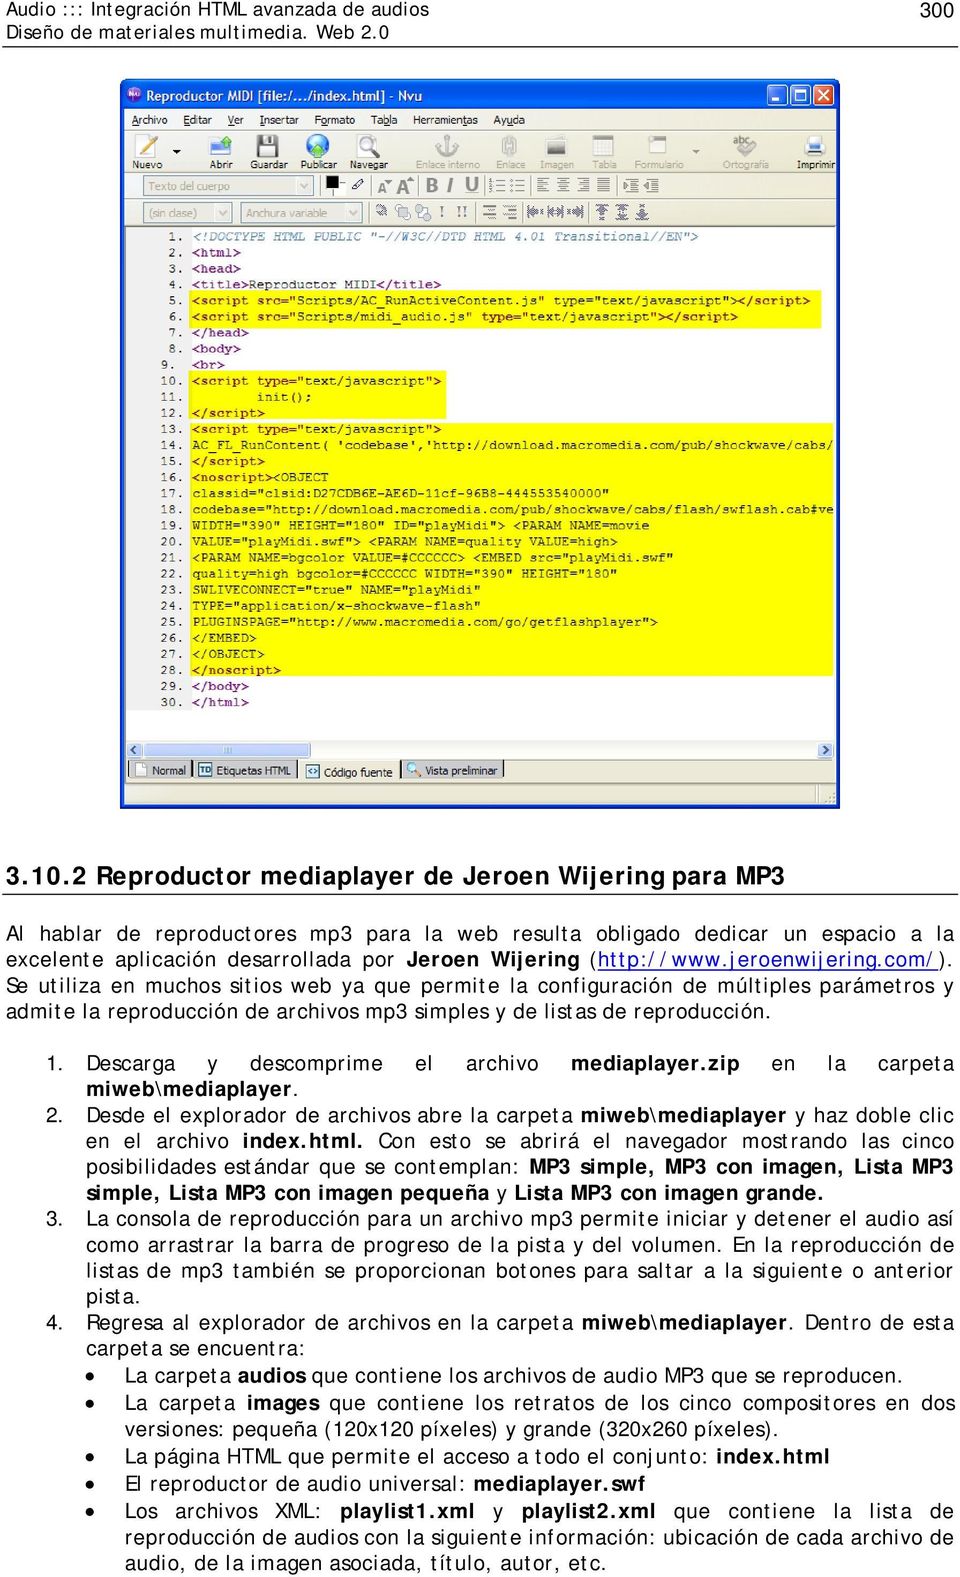 (http://www.jeroenwijering.com/). Se utiliza en muchos sitios web ya que permite la configuración de múltiples parámetros y admite la reproducción de archivos mp3 simples y de listas de reproducción.